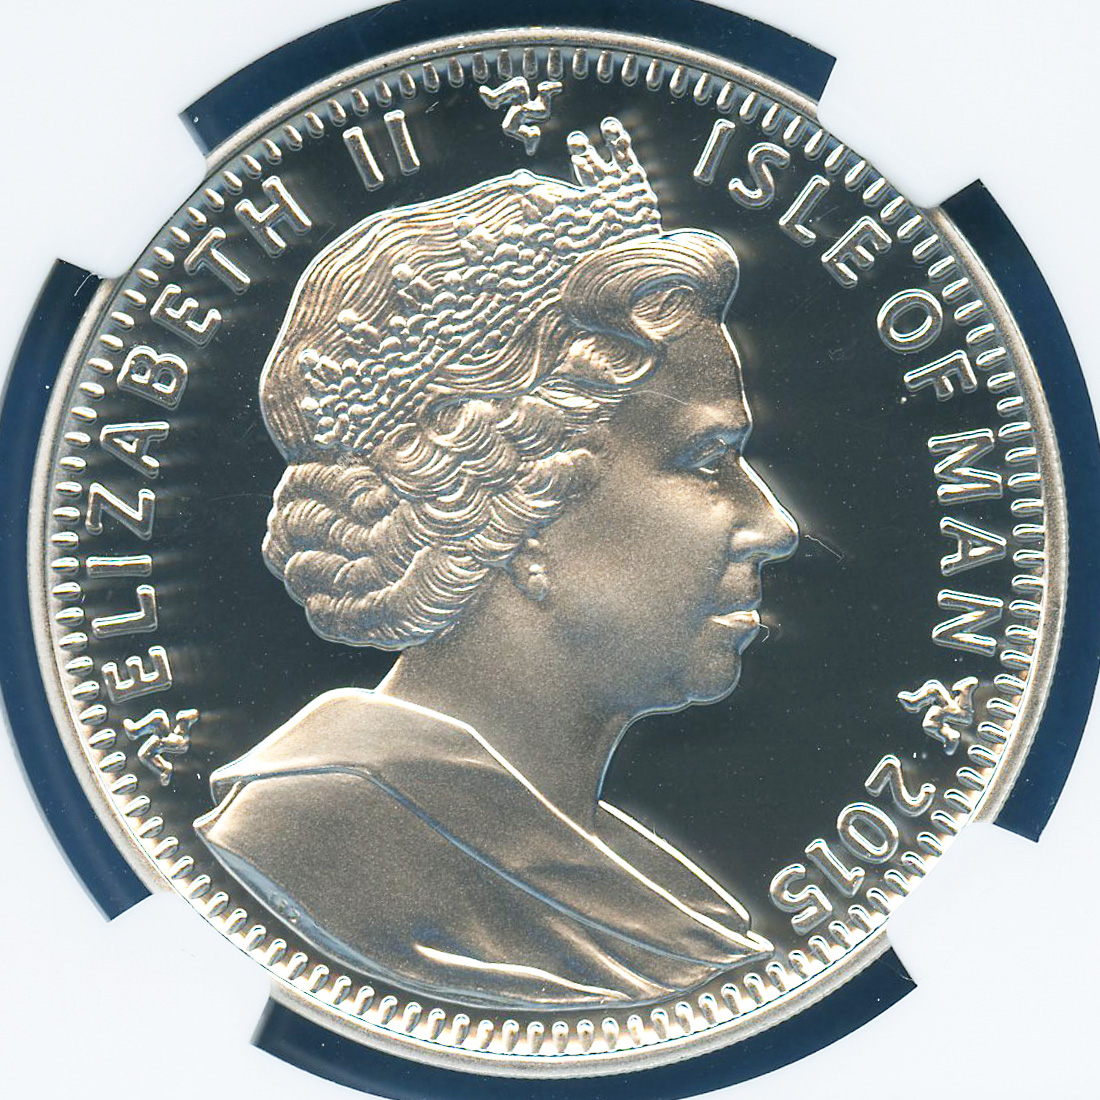 2015 マン島 エリザベス女王在位最長記念プルーフ銀貨  NGC PF70UC